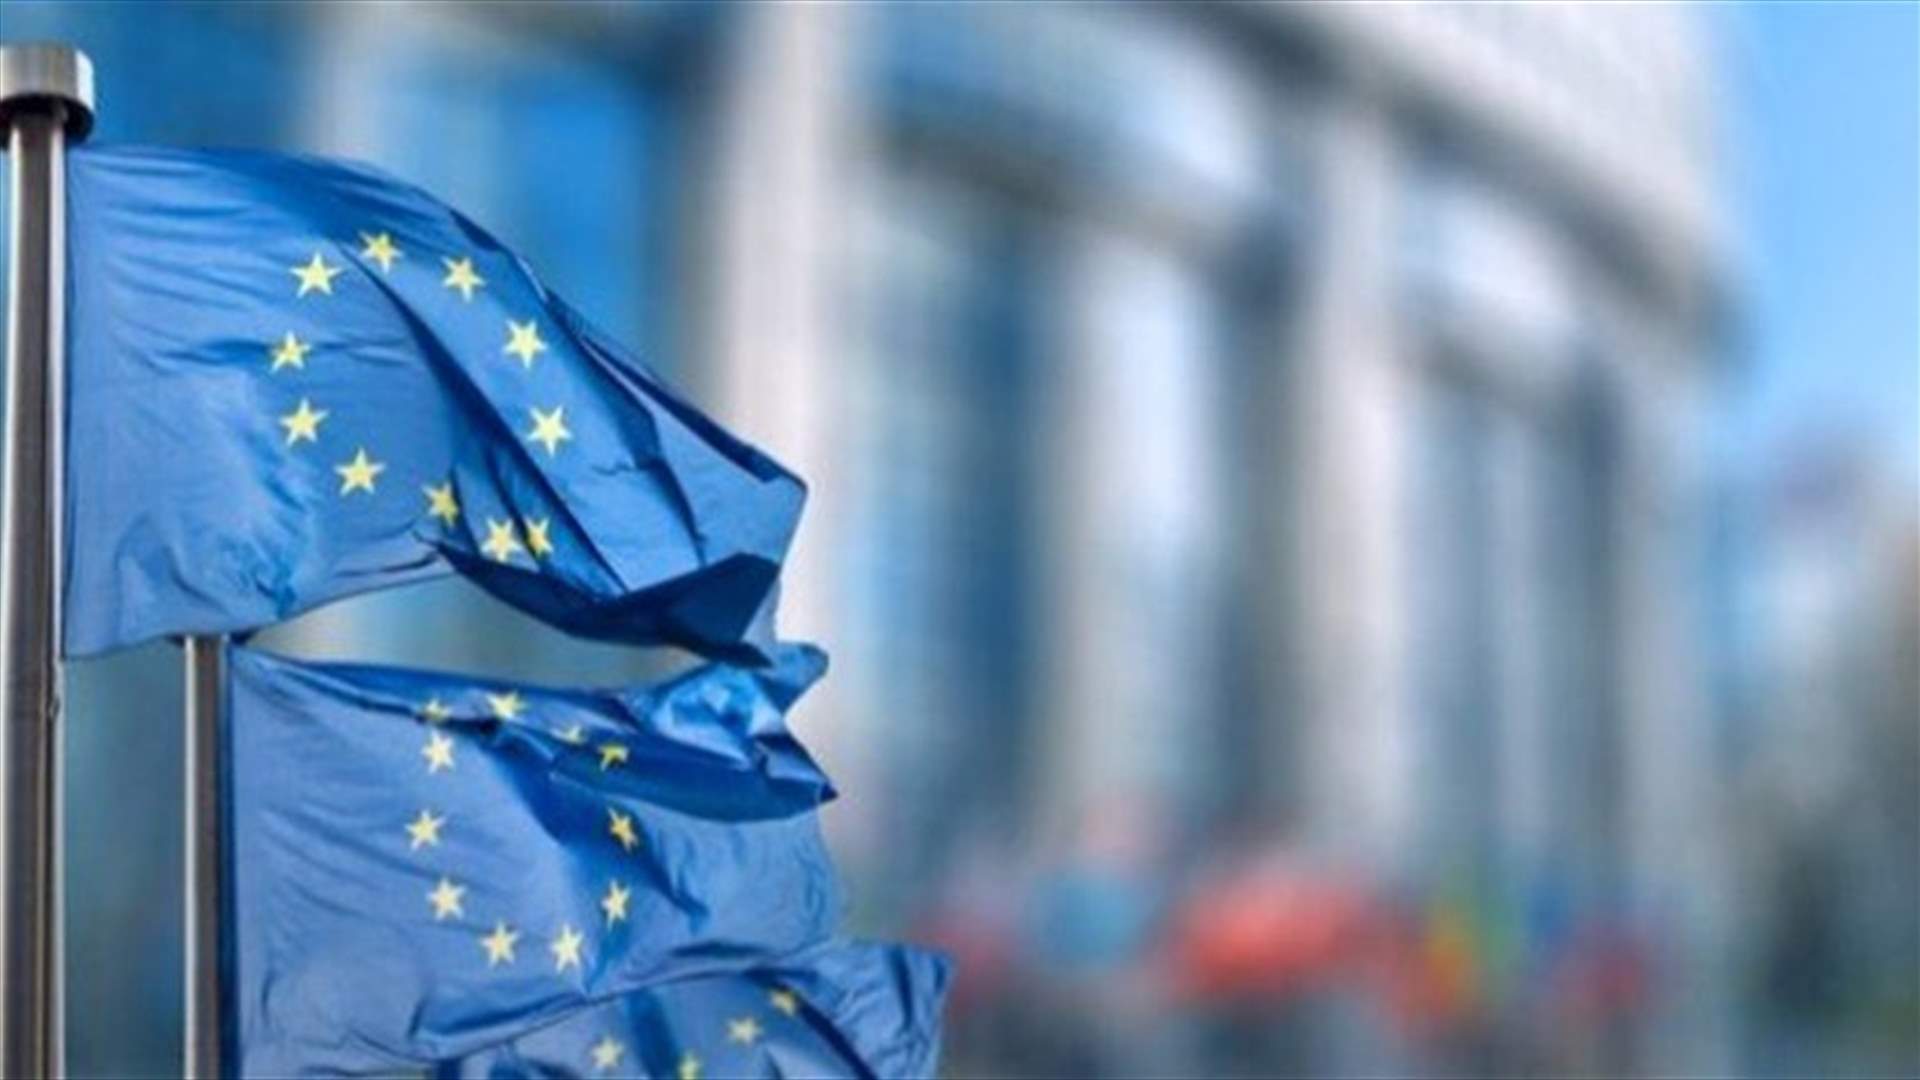 ارتفاع نسبة العبور غير النظامي إلى الاتحاد الأوروبي